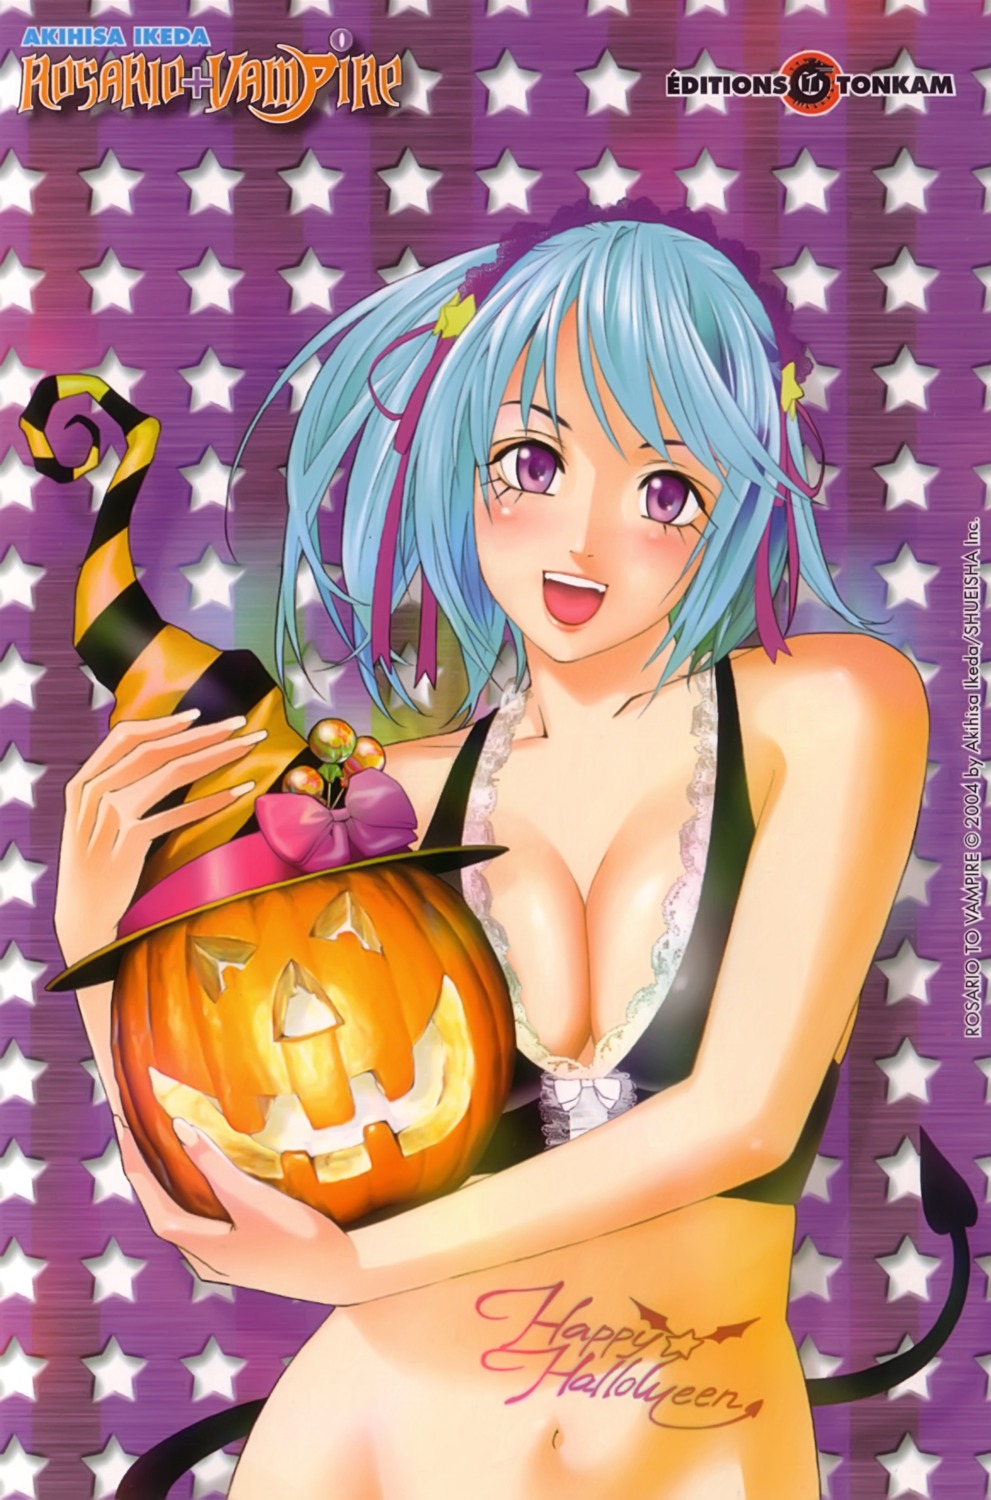 cleavage halloween kurono_kurumu rosario_+_vampire tail